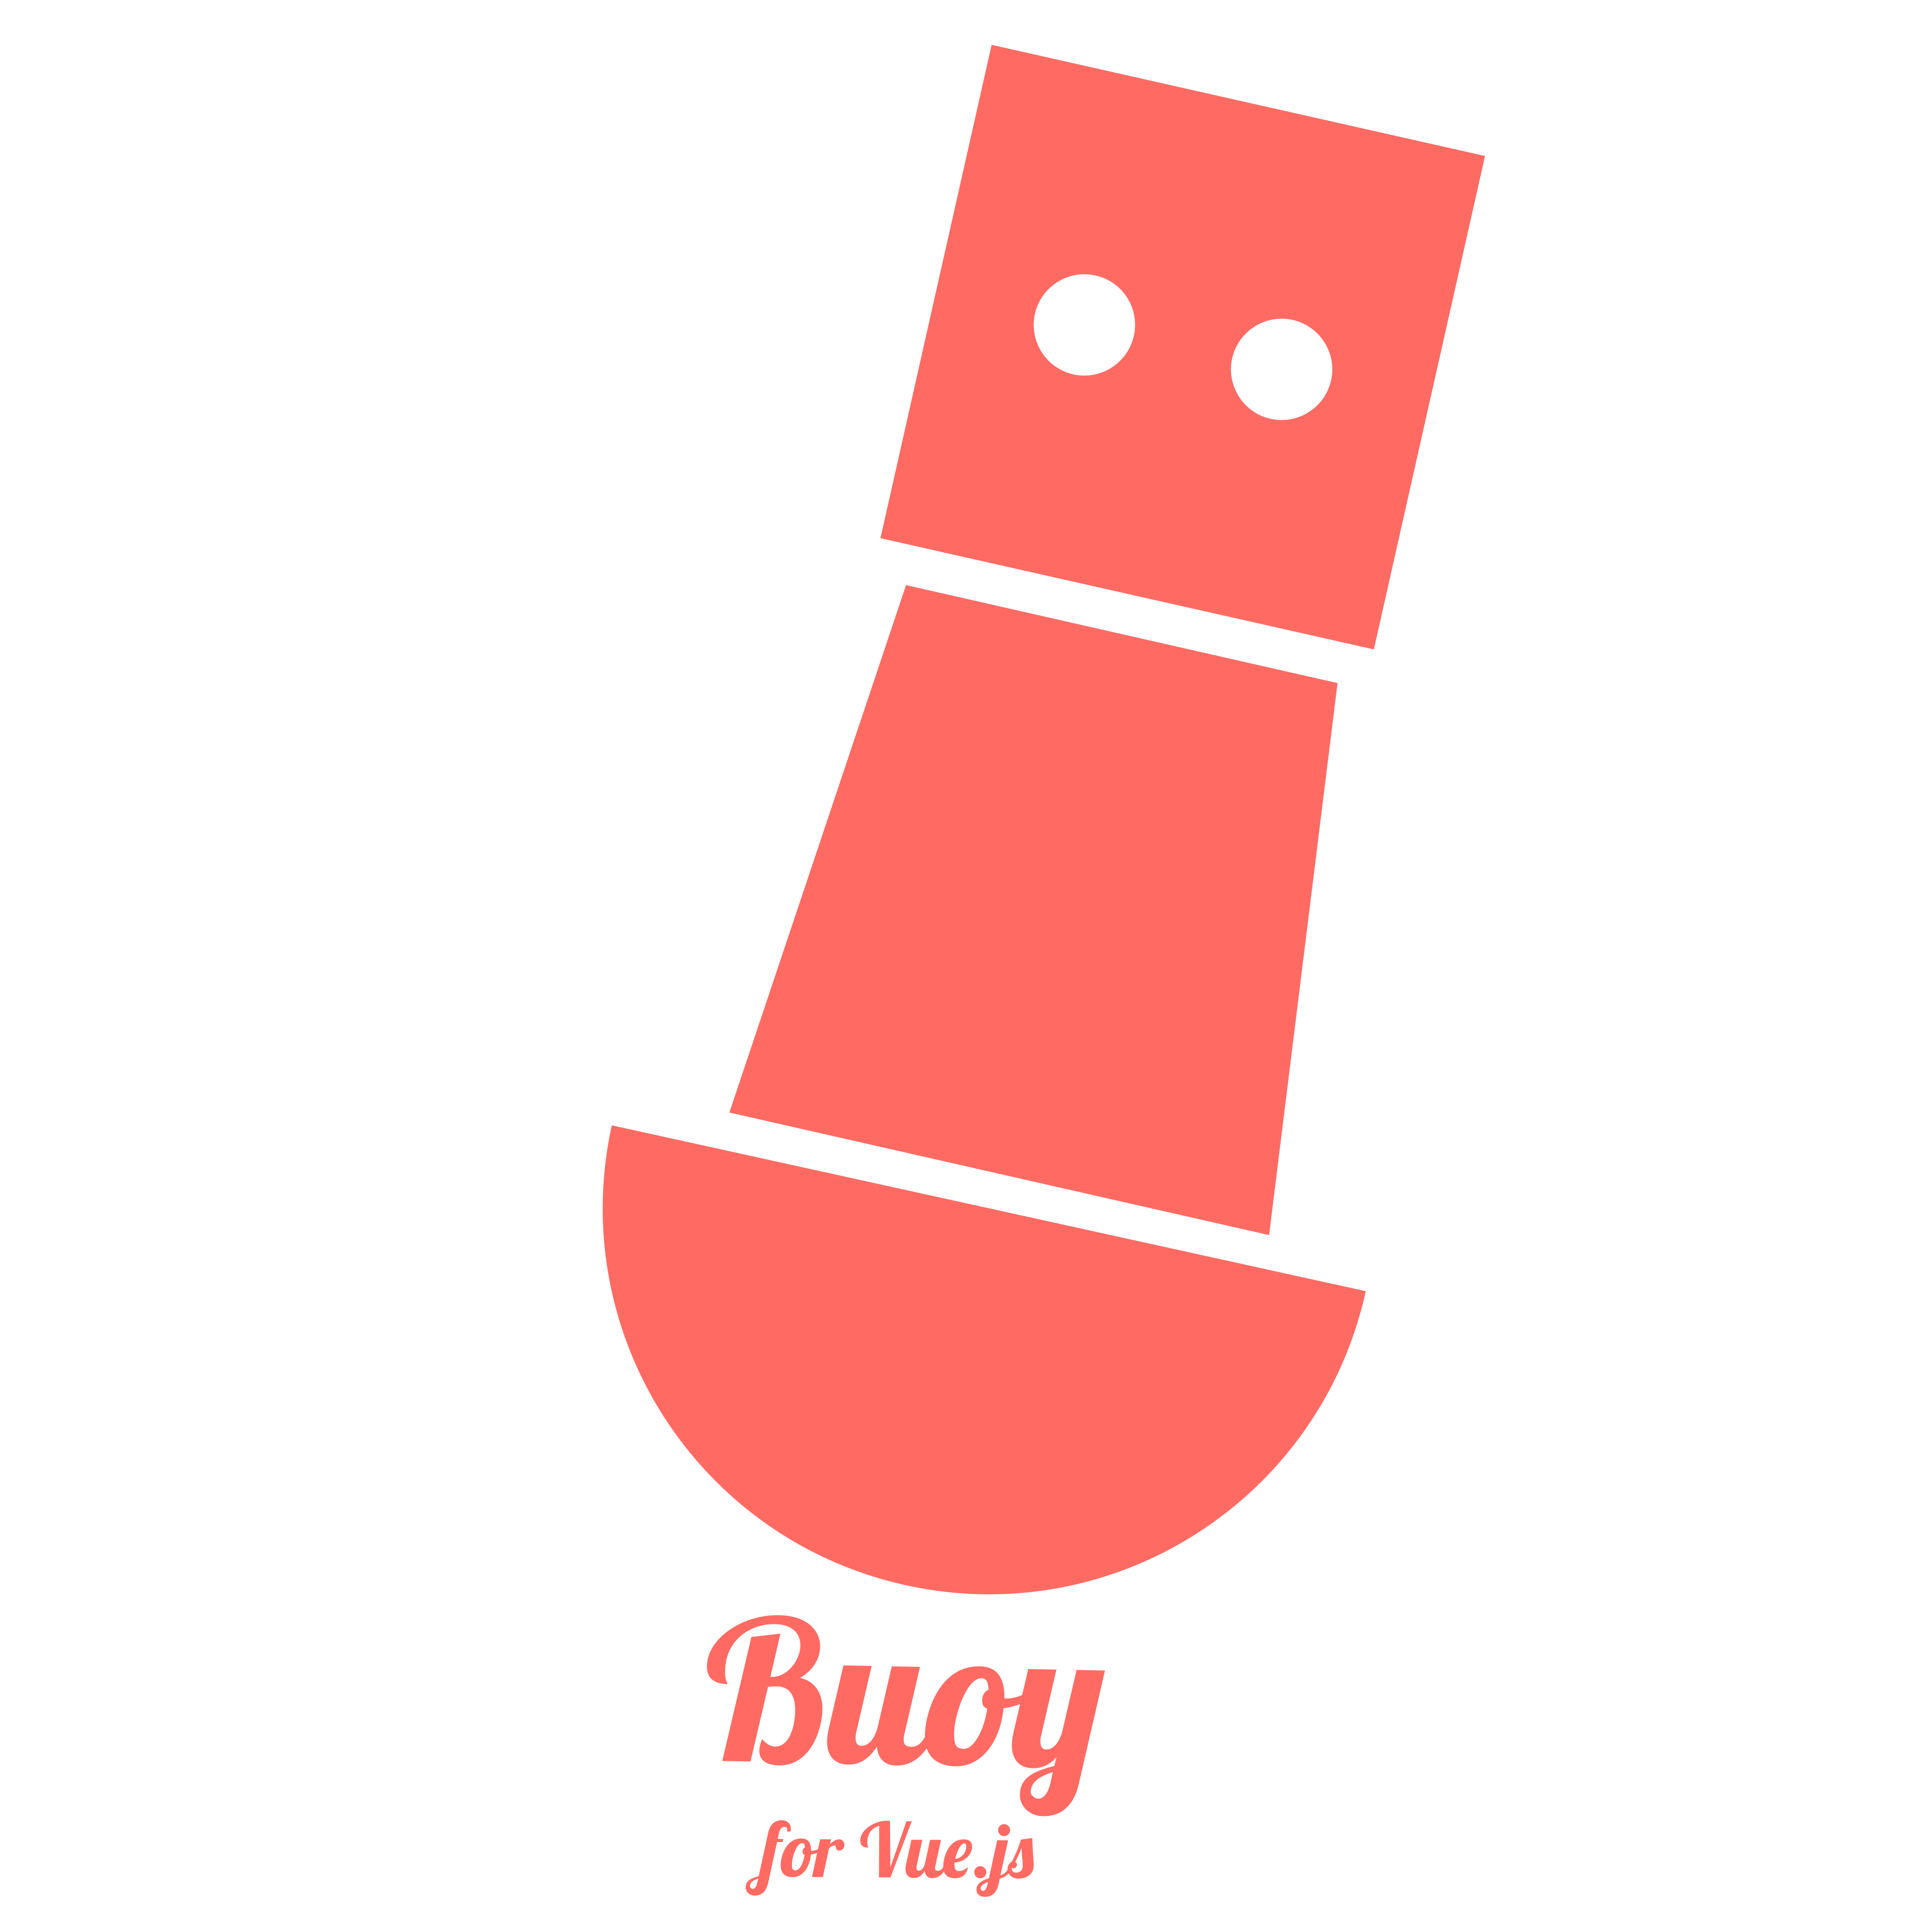 Buoy logo